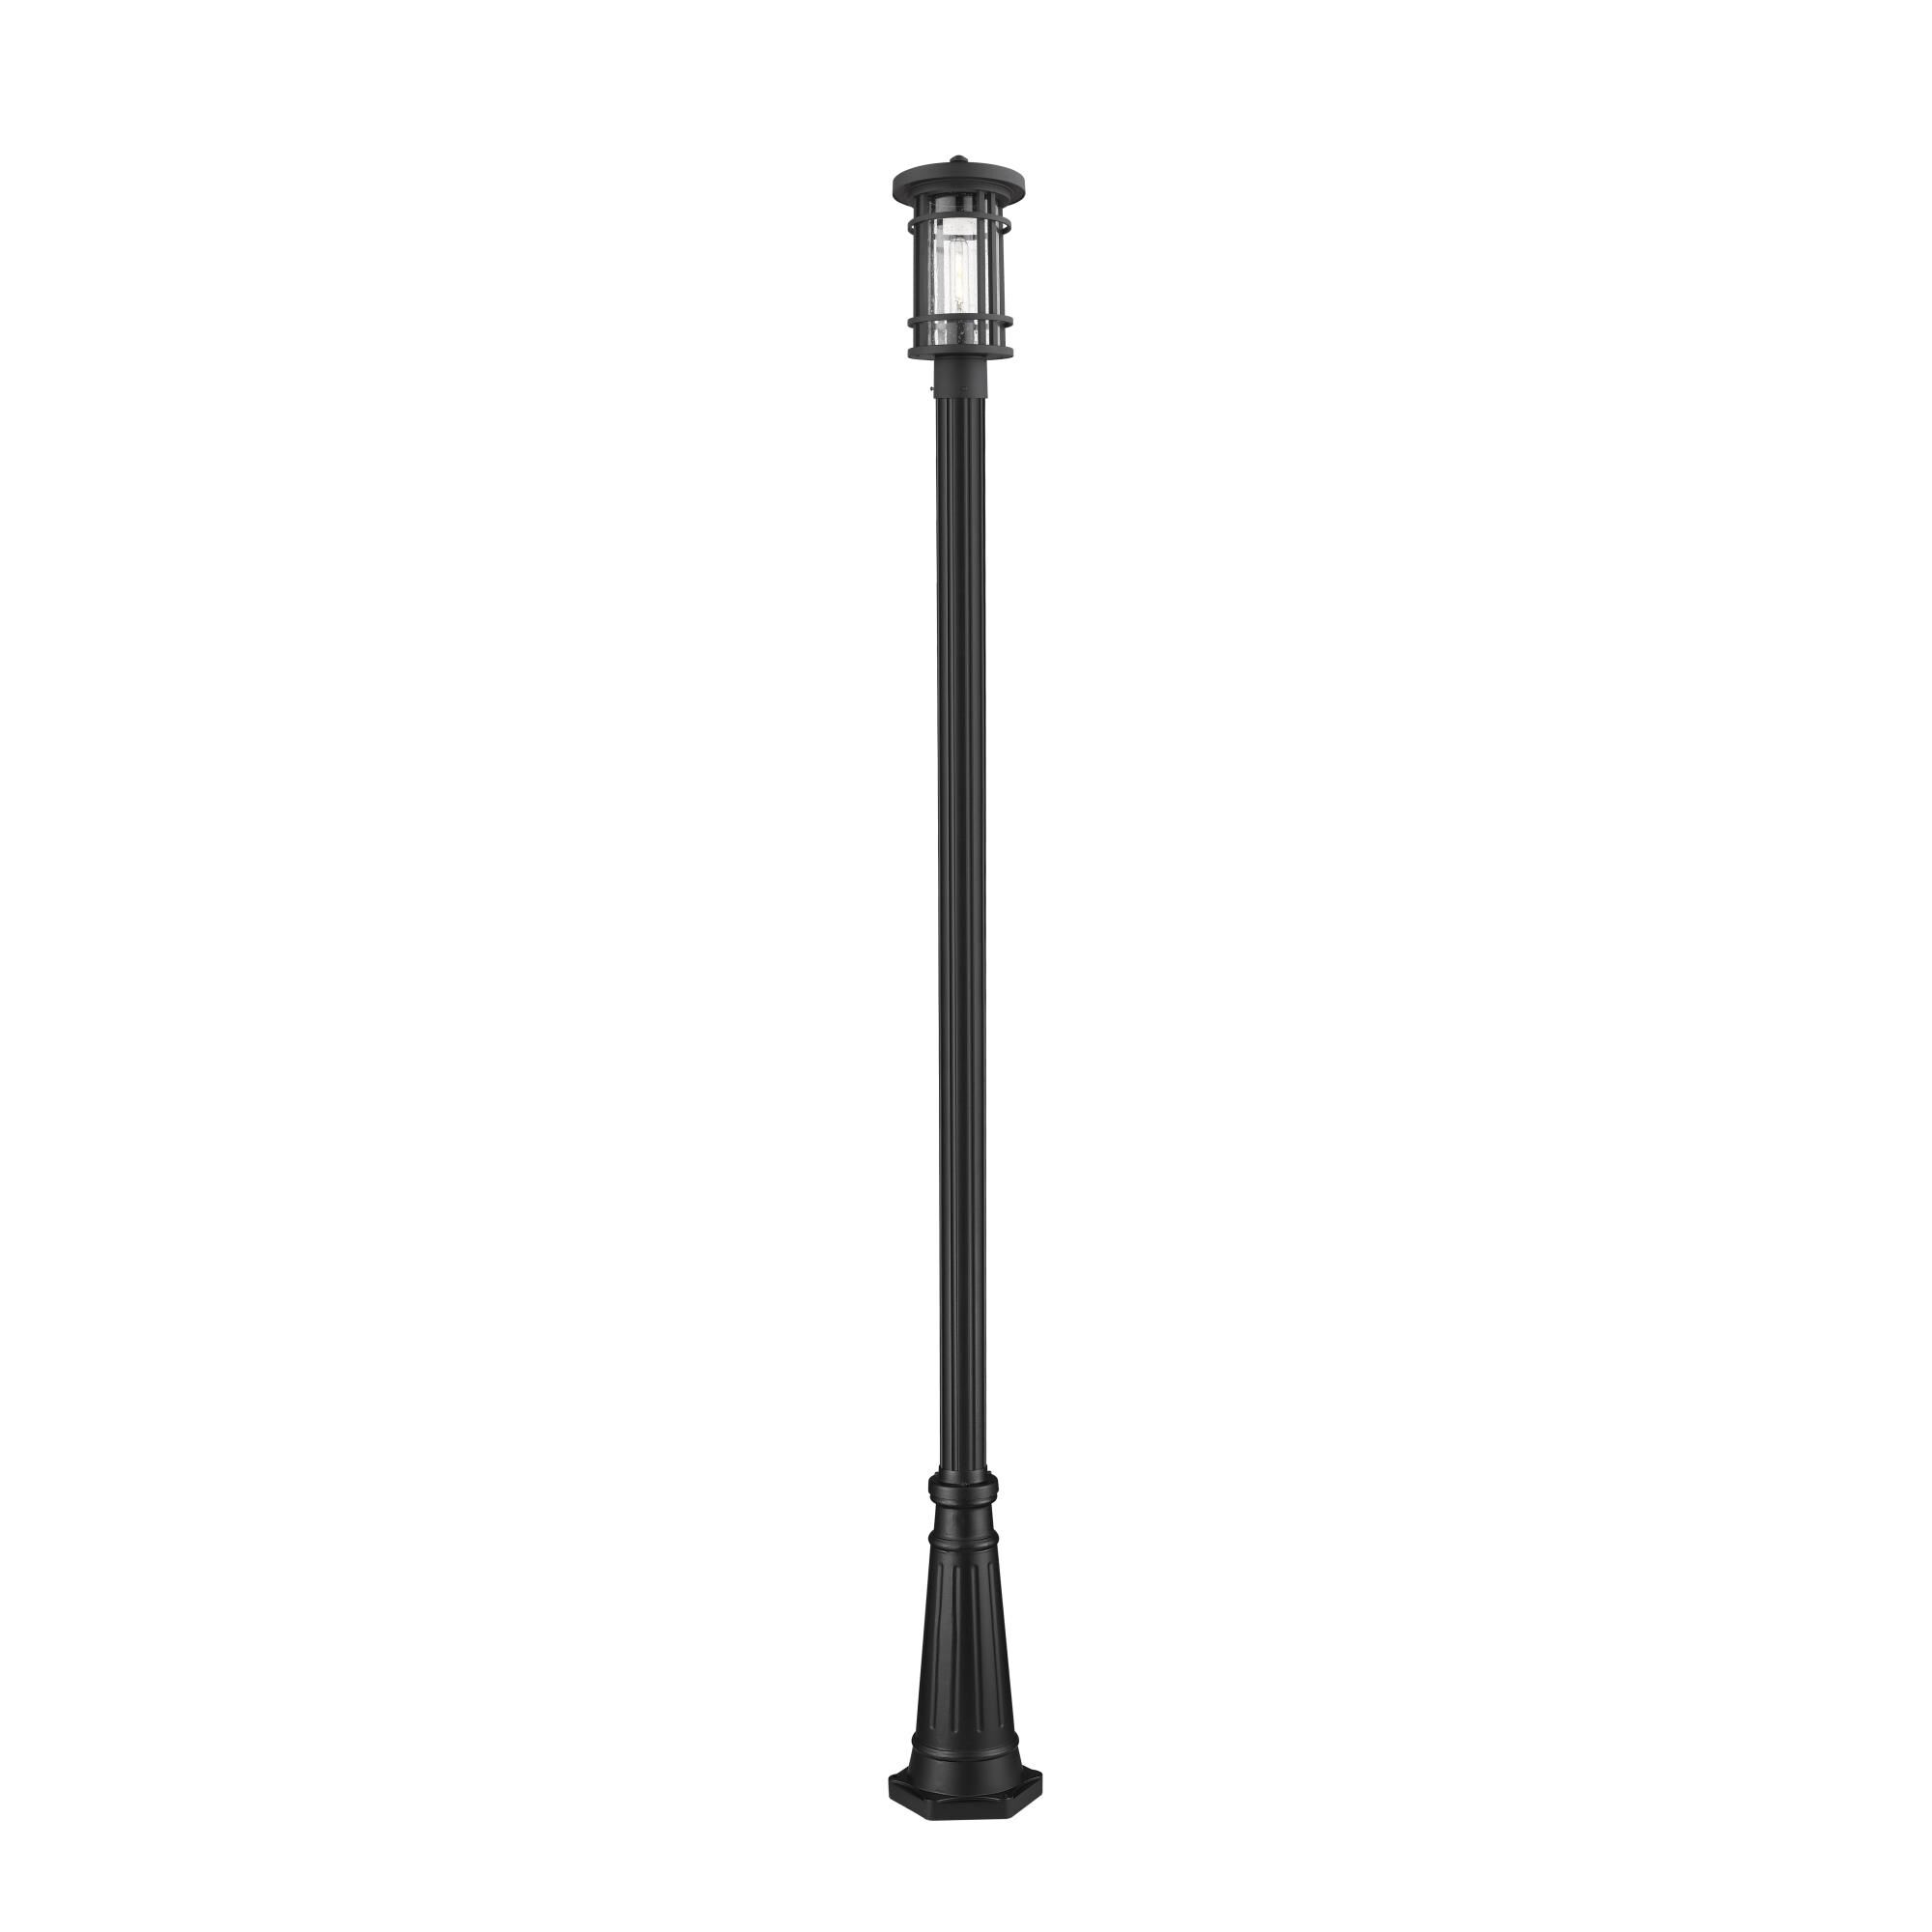 Photos - Floodlight / Street Light Z-Lite Jordan 108 Inch Tall Outdoor Post Lamp Jordan - 570PHM-519P-BK - Cr